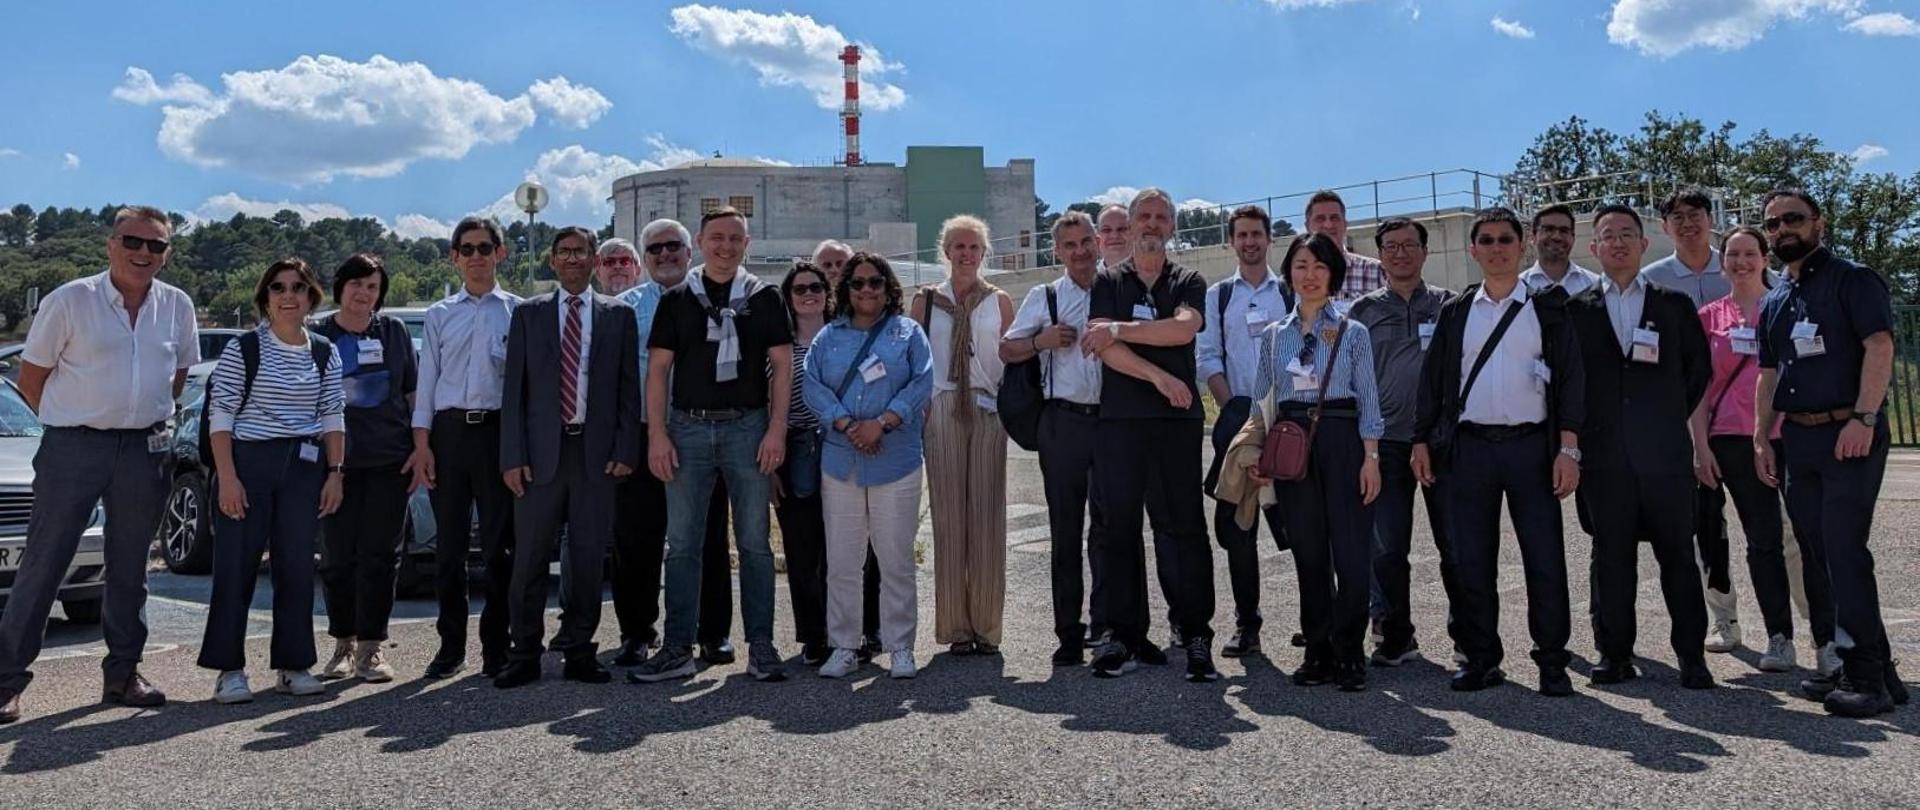 Uczestnicy 51. Posiedzenia Komitetu ds. Działalności Dozorów Jądrowych stoją w grupie podczas wizyty studyjnej na terenie reaktora RJH (Jules Horowitz Reactor) w Cadarache. W tle budynek reaktora oraz biało-czerwony komin